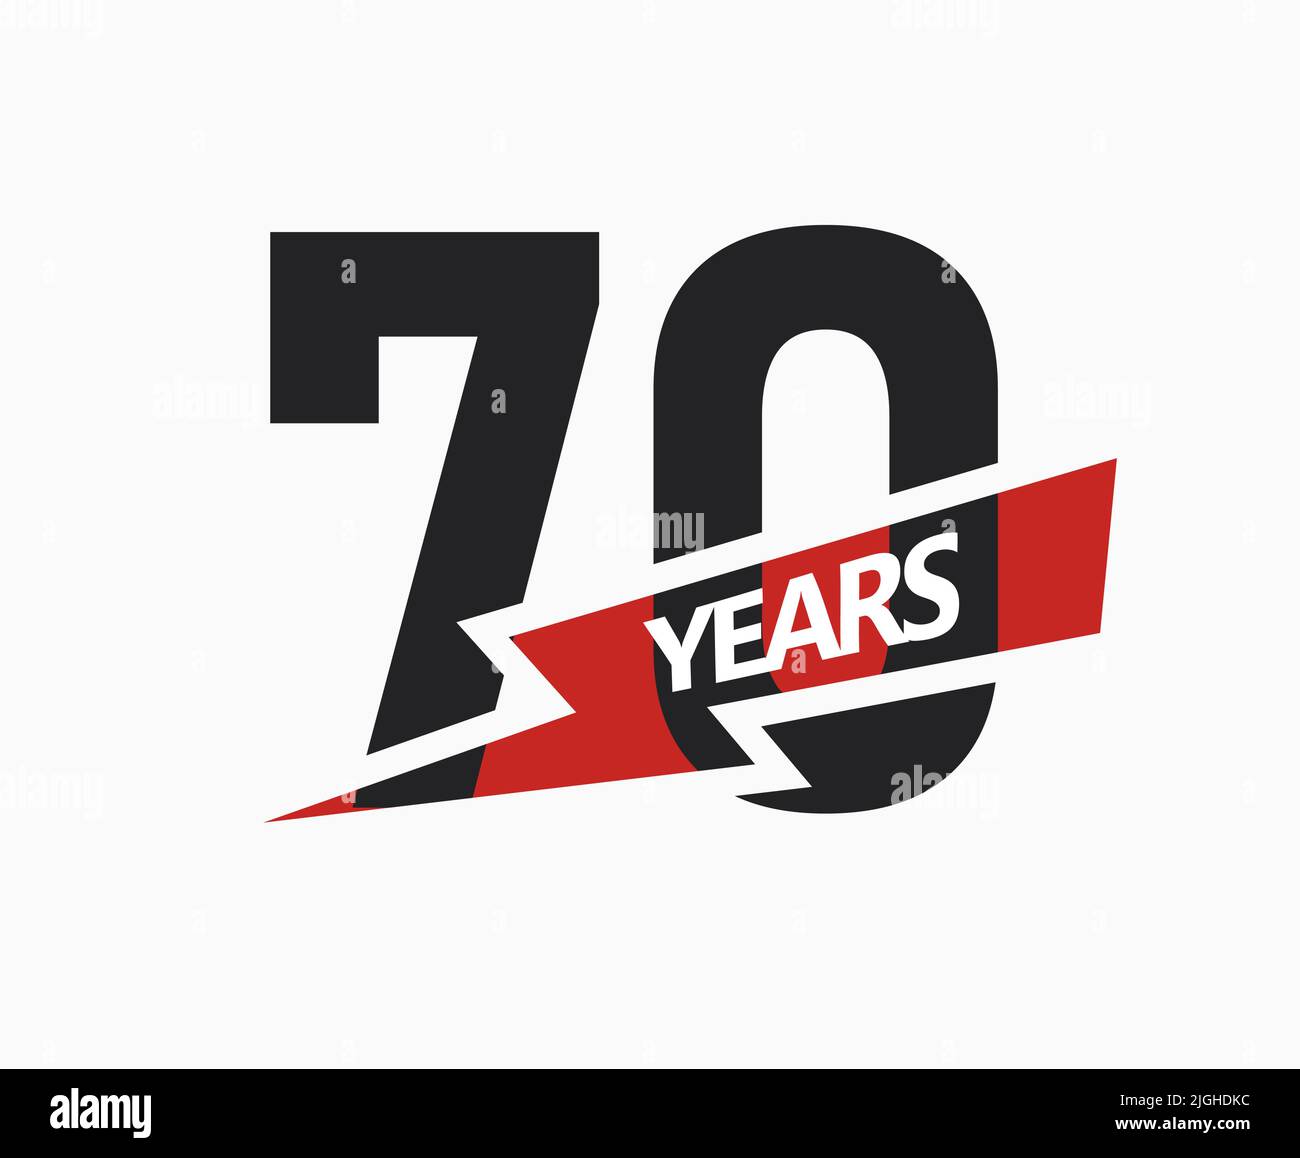 70 ans d'affaires, logo jubilé. 70th signe anniversaire. Motif graphique moderne pour l'anniversaire de l'entreprise. Illustration vectorielle isolée. Illustration de Vecteur